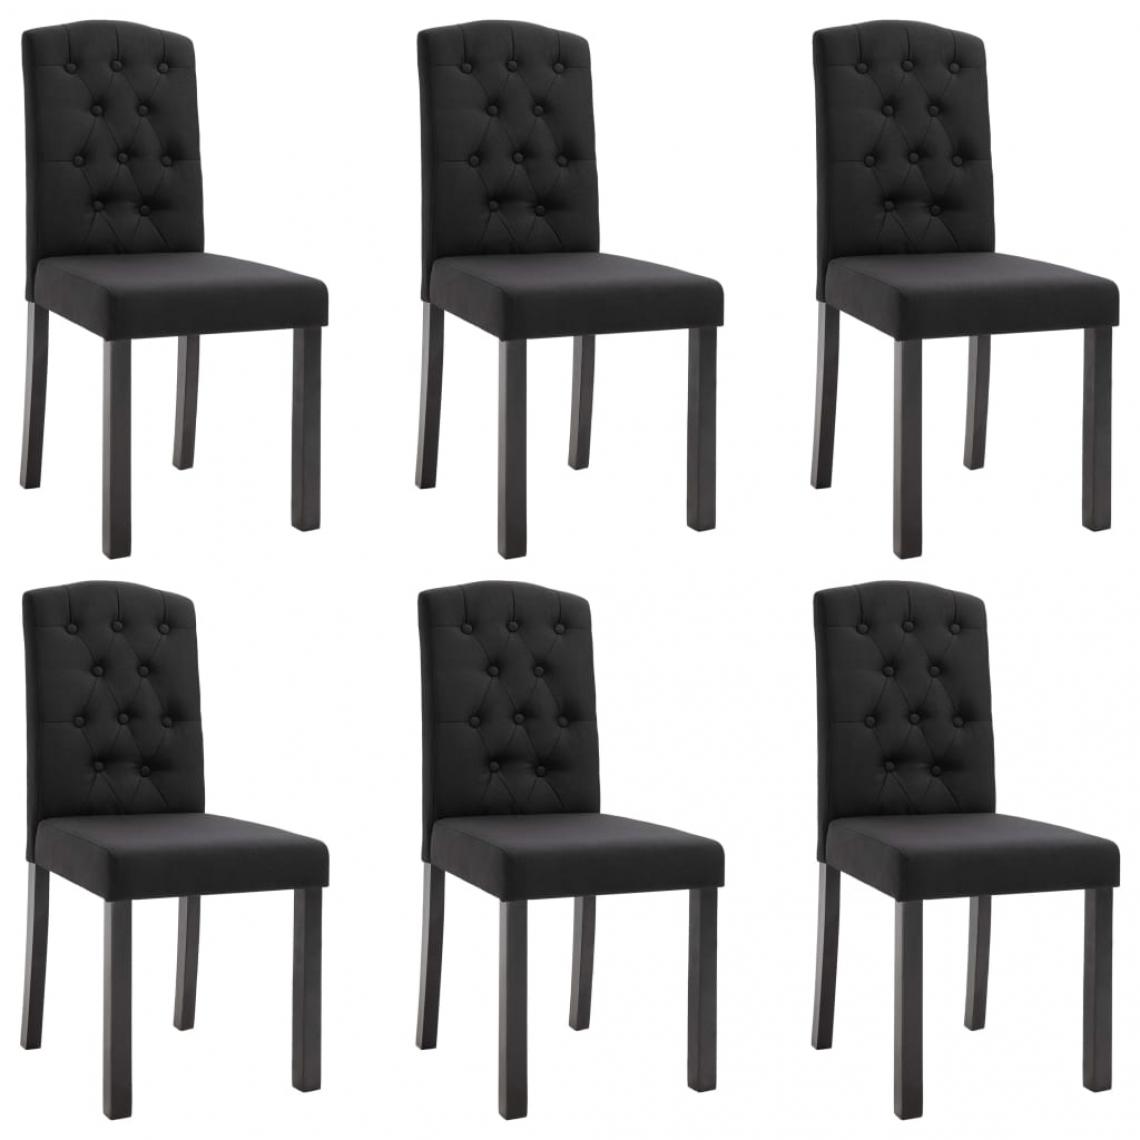 Decoshop26 - Lot de 6 chaises de salle à manger cuisine design moderne tissu noir CDS022713 - Chaises